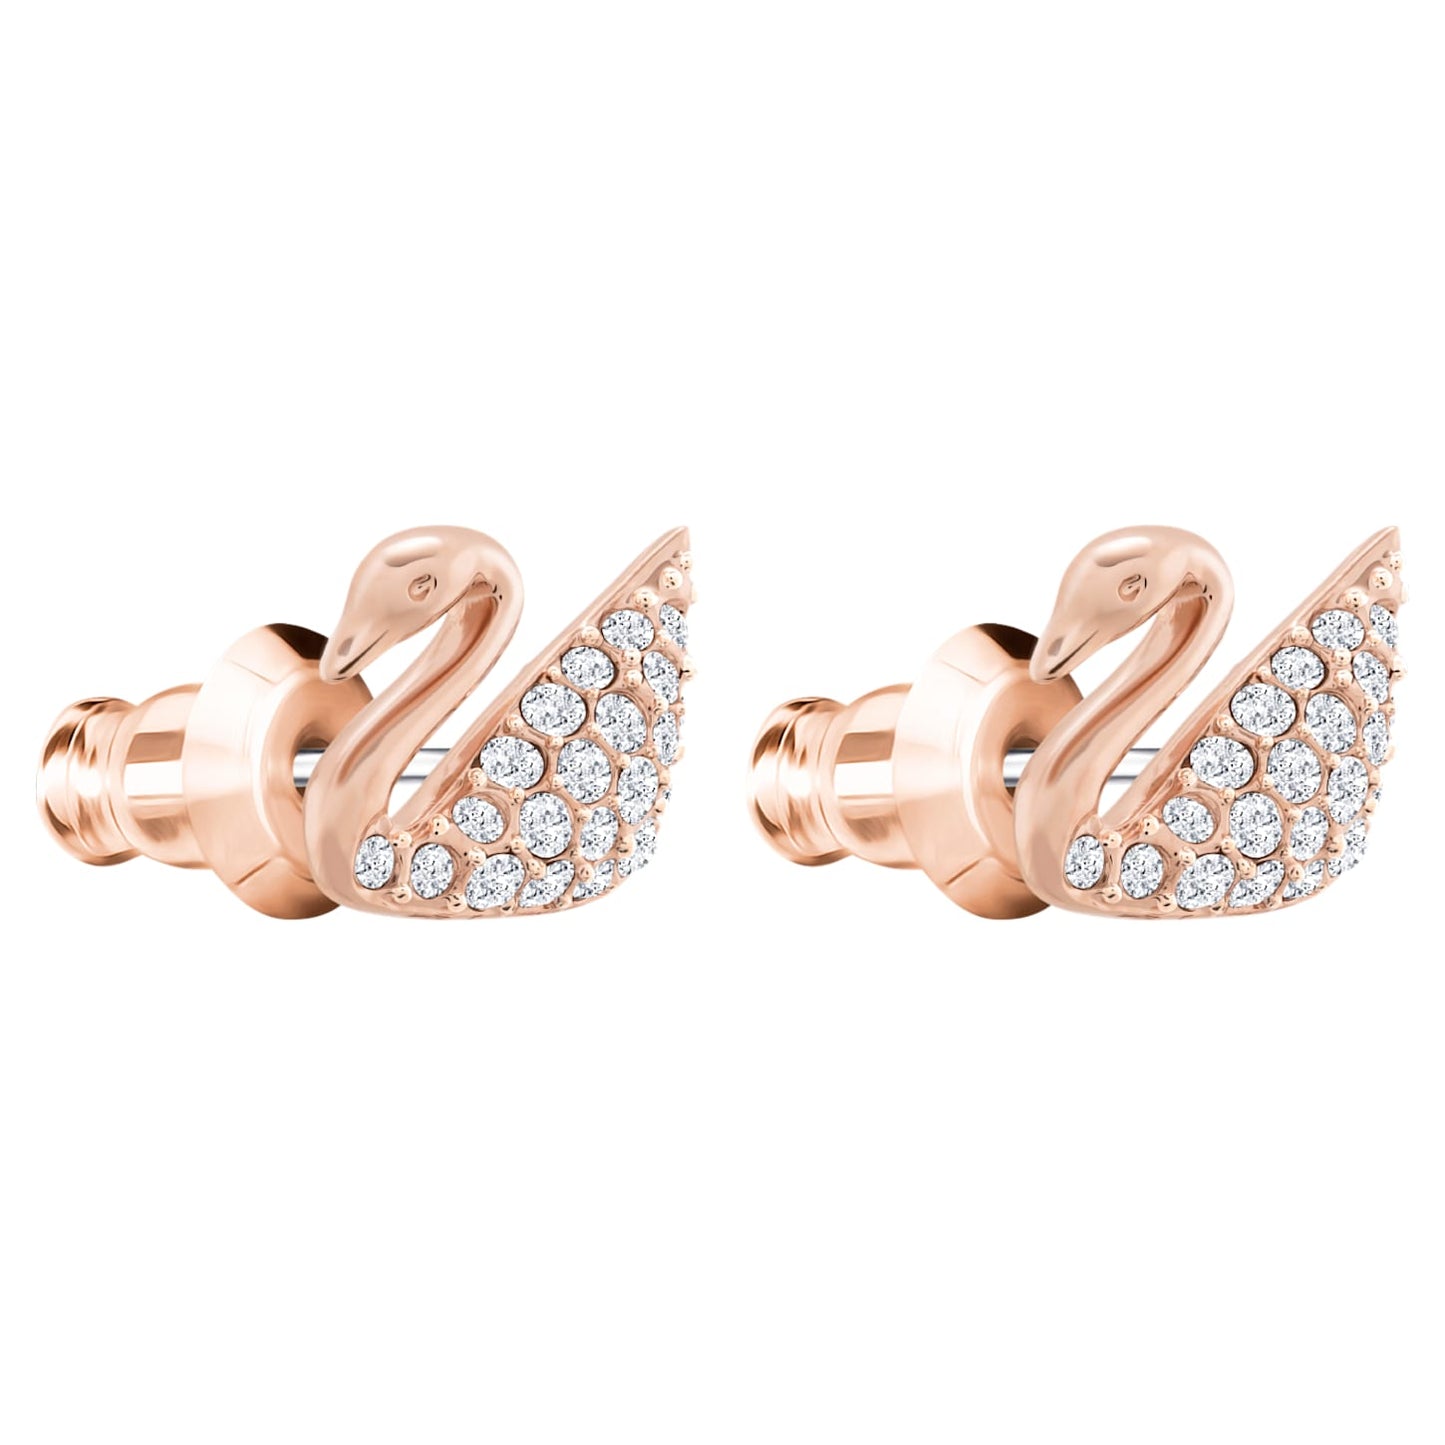 Bông tai thiên nga vàng hồng Swarovski - Swan Pierced Earrings White Rose Gold - 3